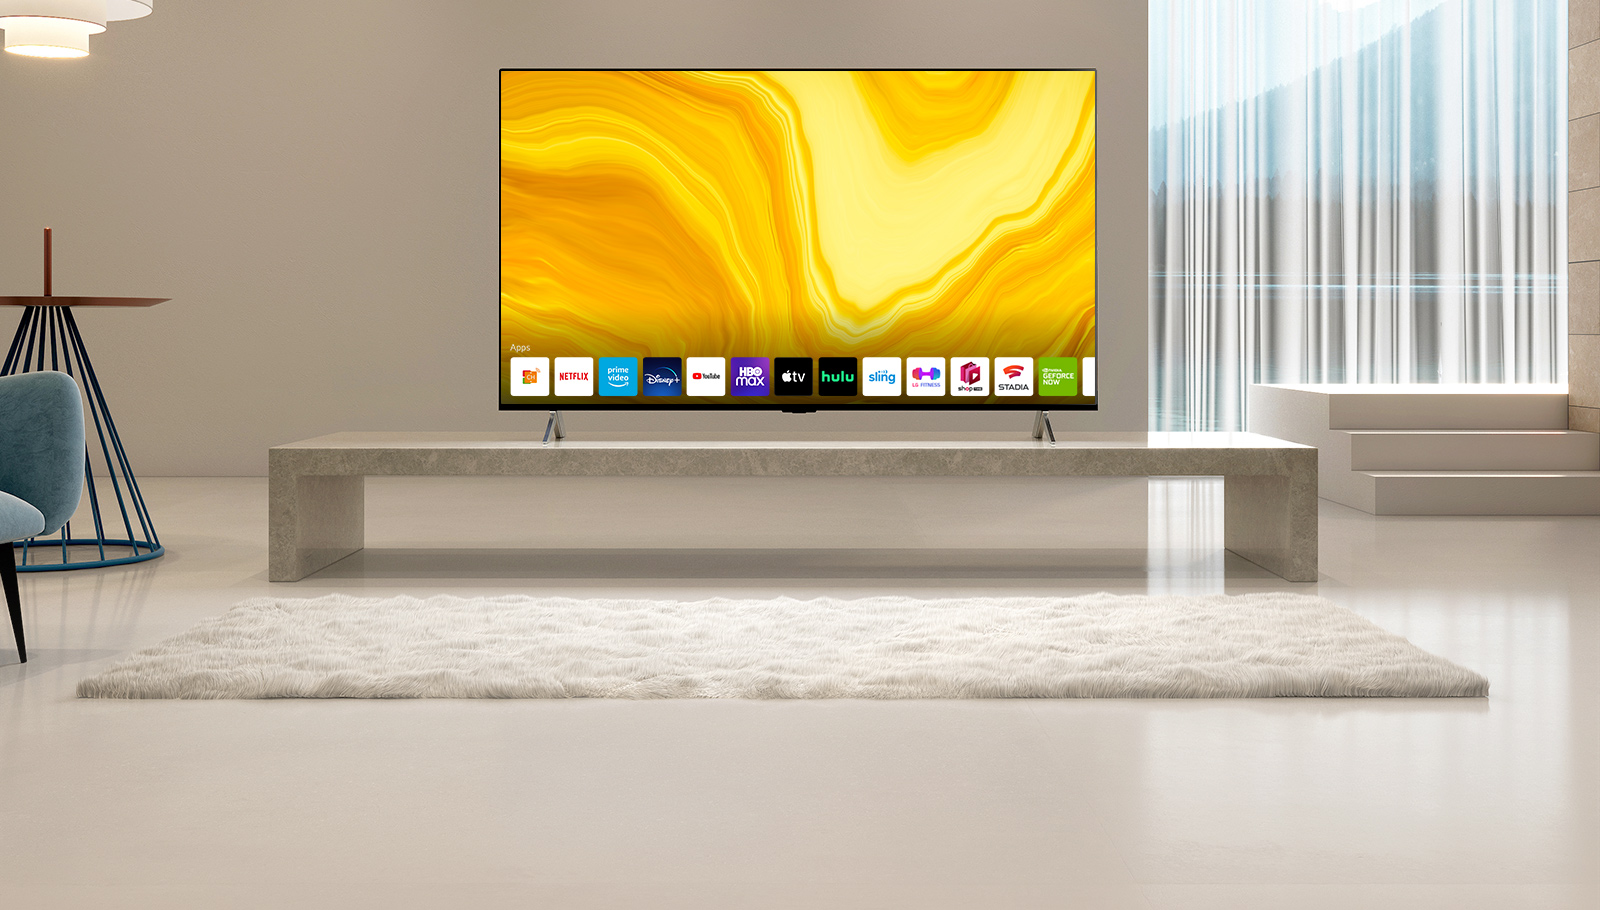 Il présente une liste d’interfaces utilisateurs graphiques de l’écran d’accueil LG QNED qui défile vers le bas. Changements de décor pour présenter le téléviseur placé dans un salon jaune.